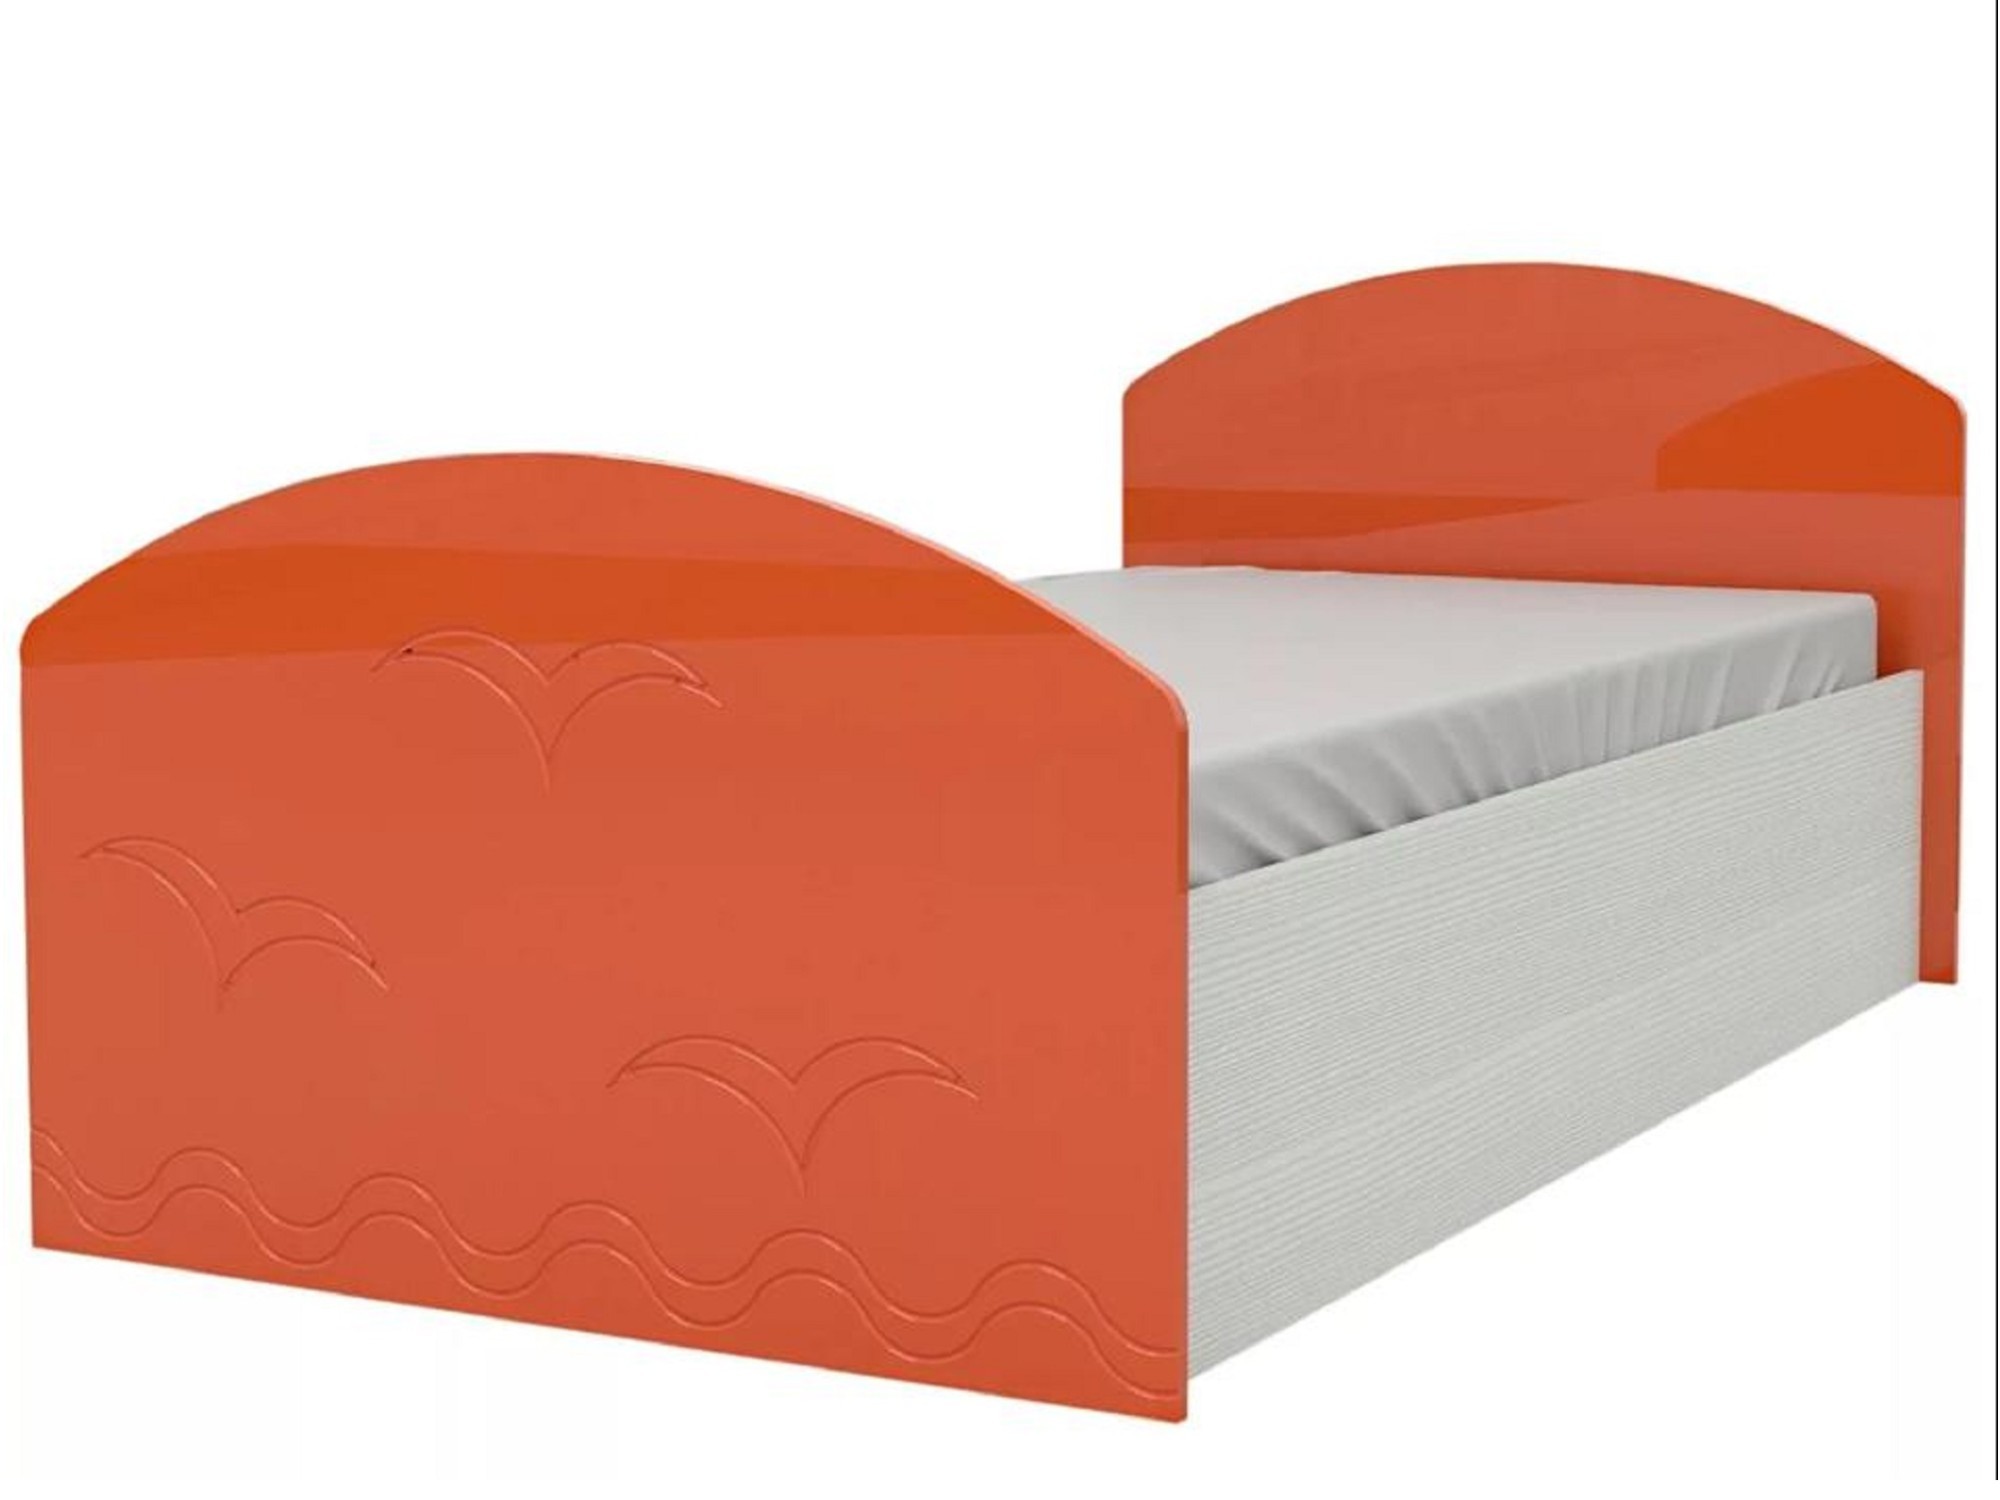 Юниор-2 Детская кровать 80, металлик (Оранжевый металлик, Дуб белёный) Оранжевый металлик, МДФ, ЛДСП детская кровать дельфин 80х200 синий металлик дуб белёный синий металлик мдф лдсп